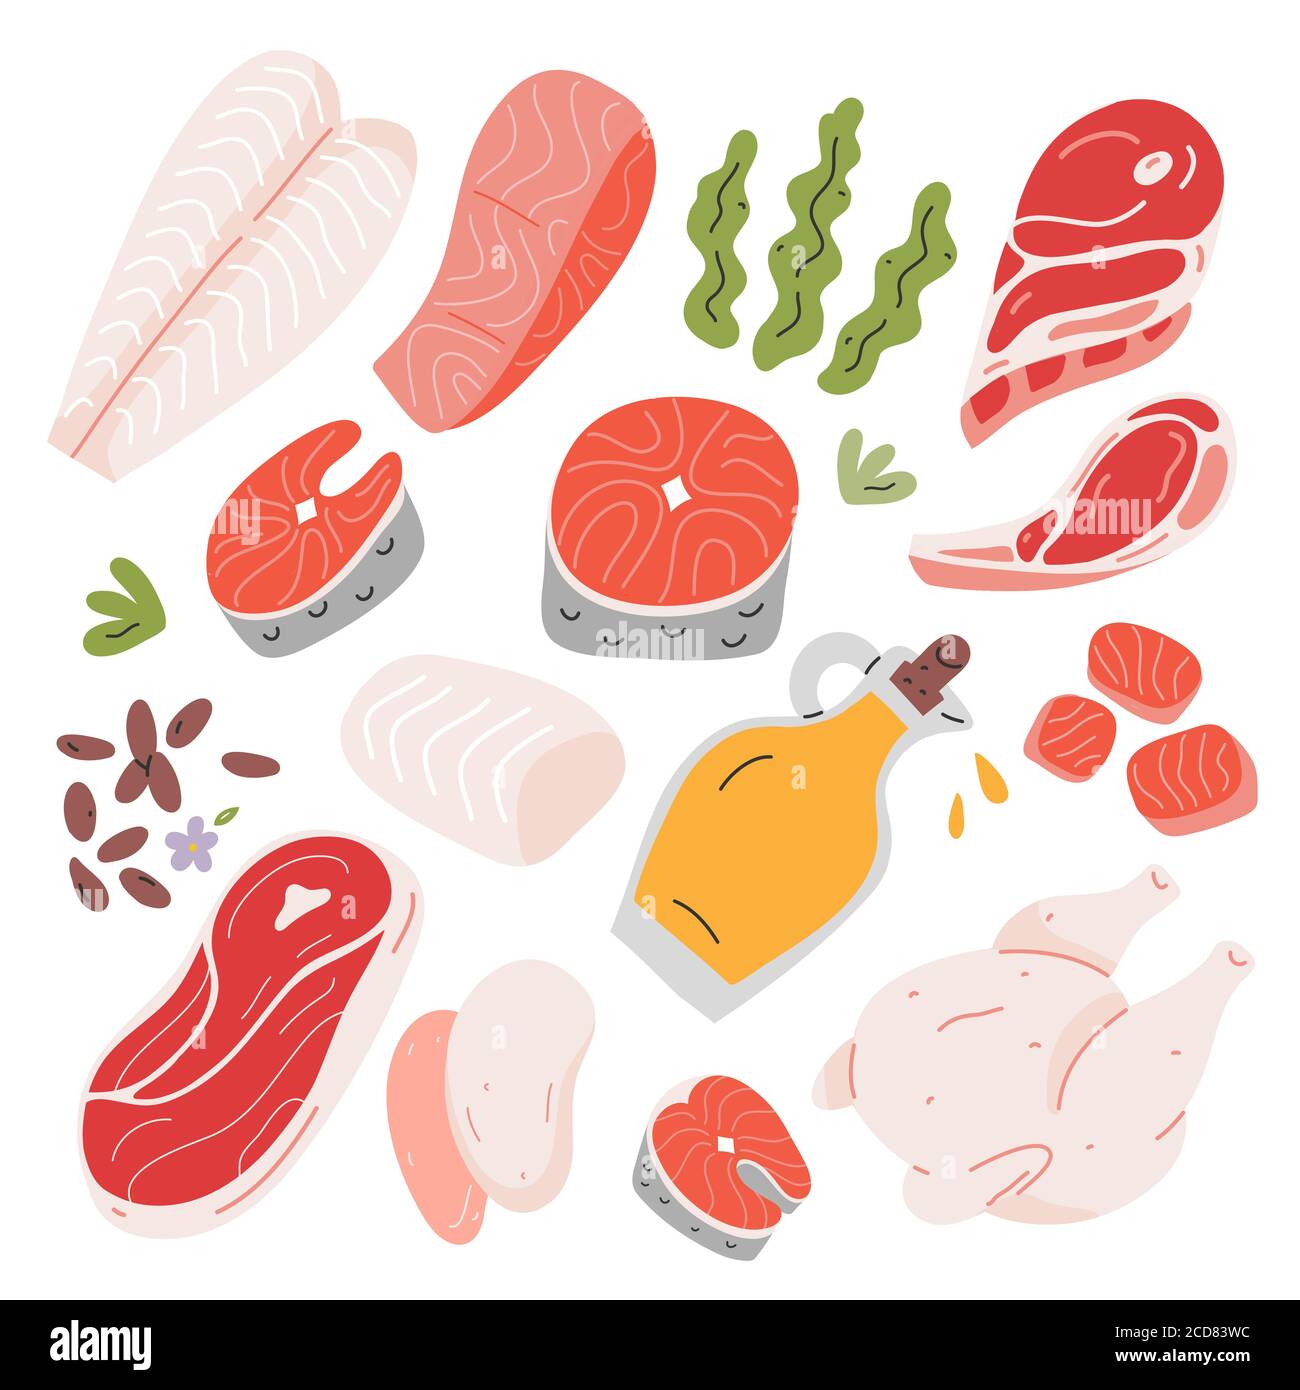 Kochen Lebensmittel Zutaten, Rind-und Lammfleisch, Lachs und weißen Fisch Filet und Steak, handgezeichnete Vektor-Illustration, isolierte Symbole, Leinsamen und Stock Vektor